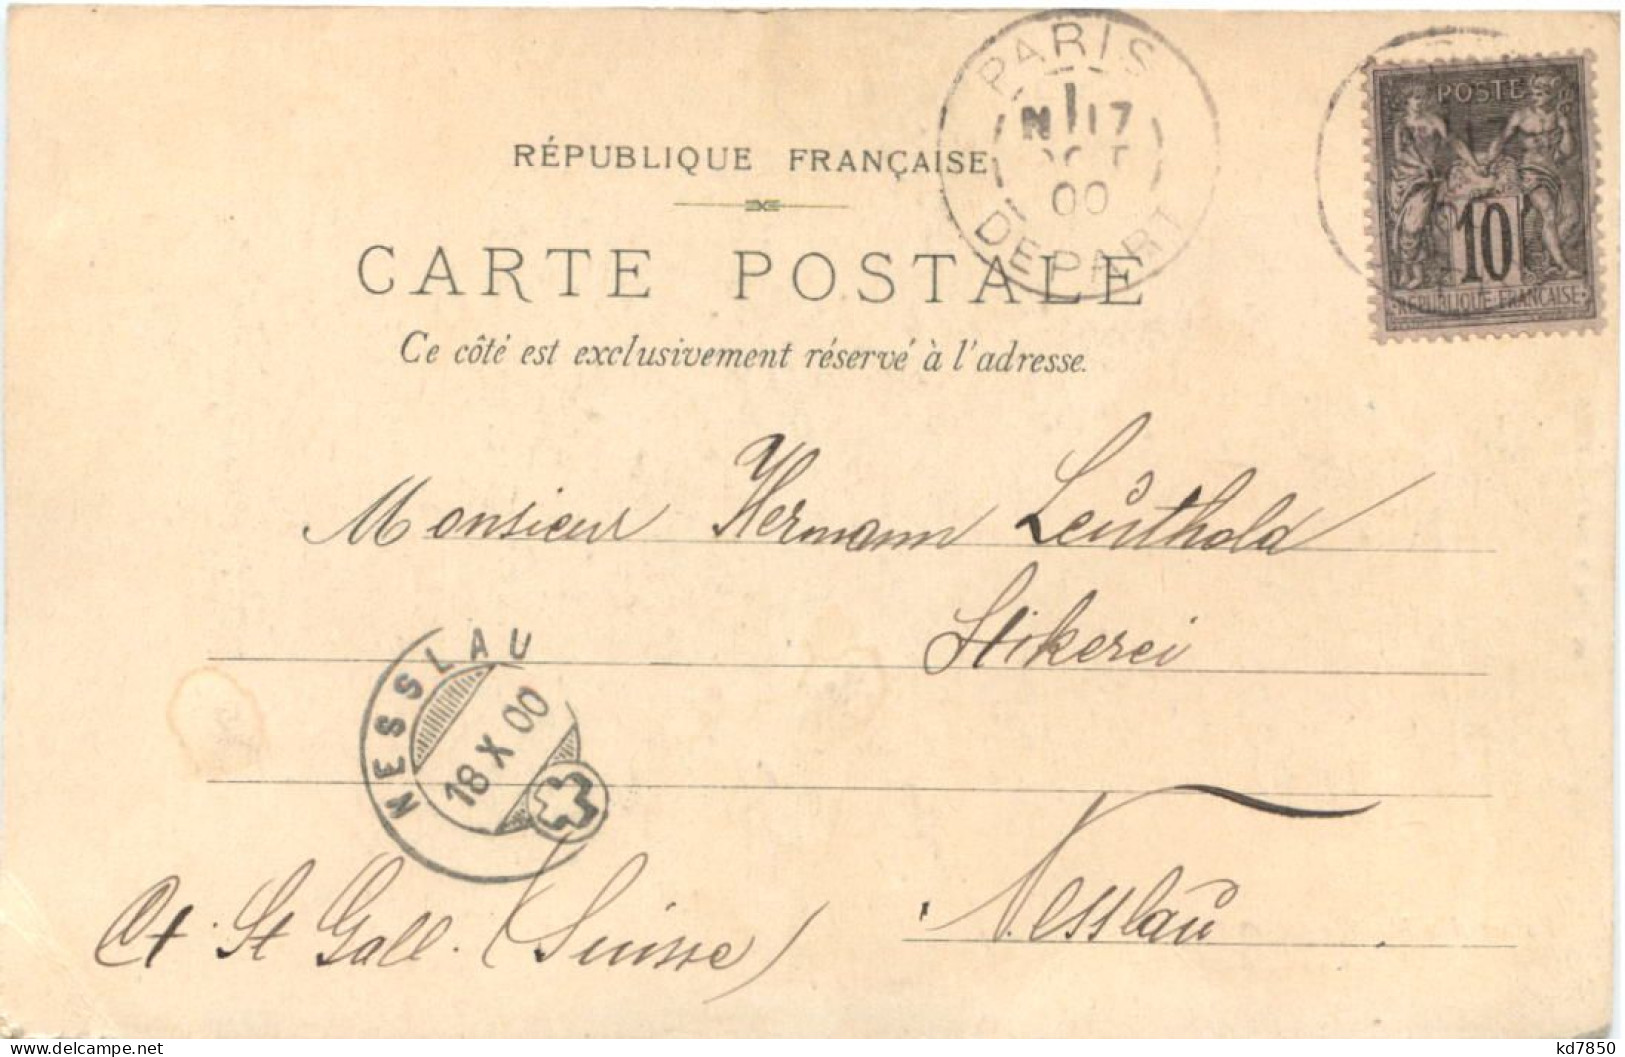 Paris - Exposition Universelle 1900 - Mostre